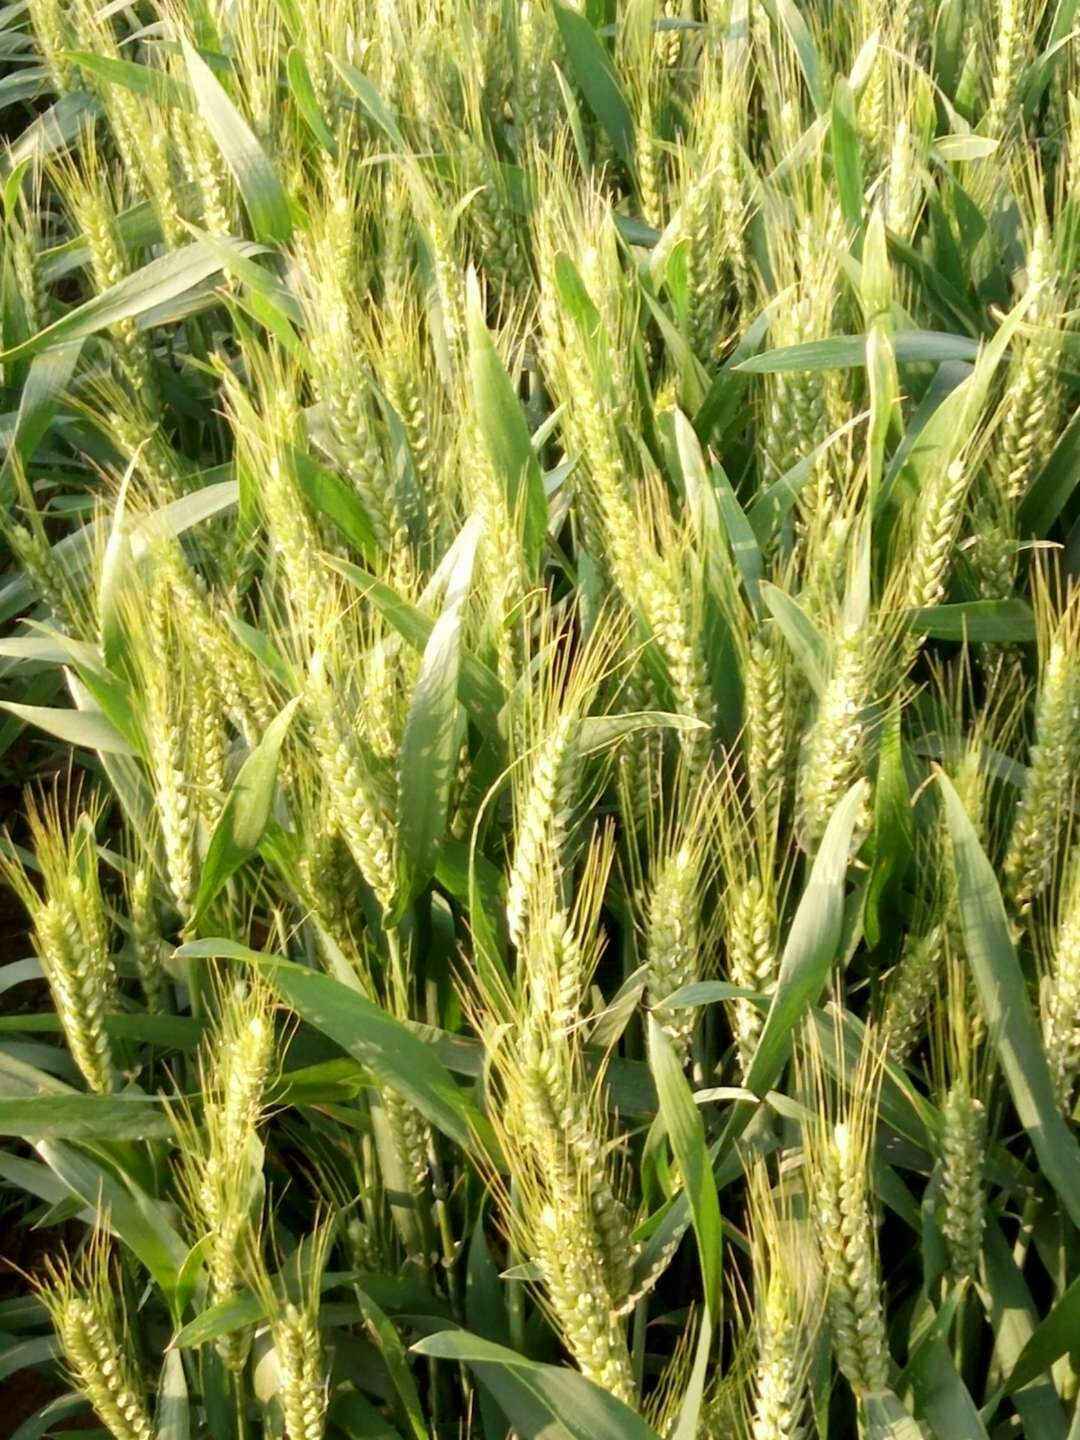 小麦纹枯病是冬小麦常见的病害